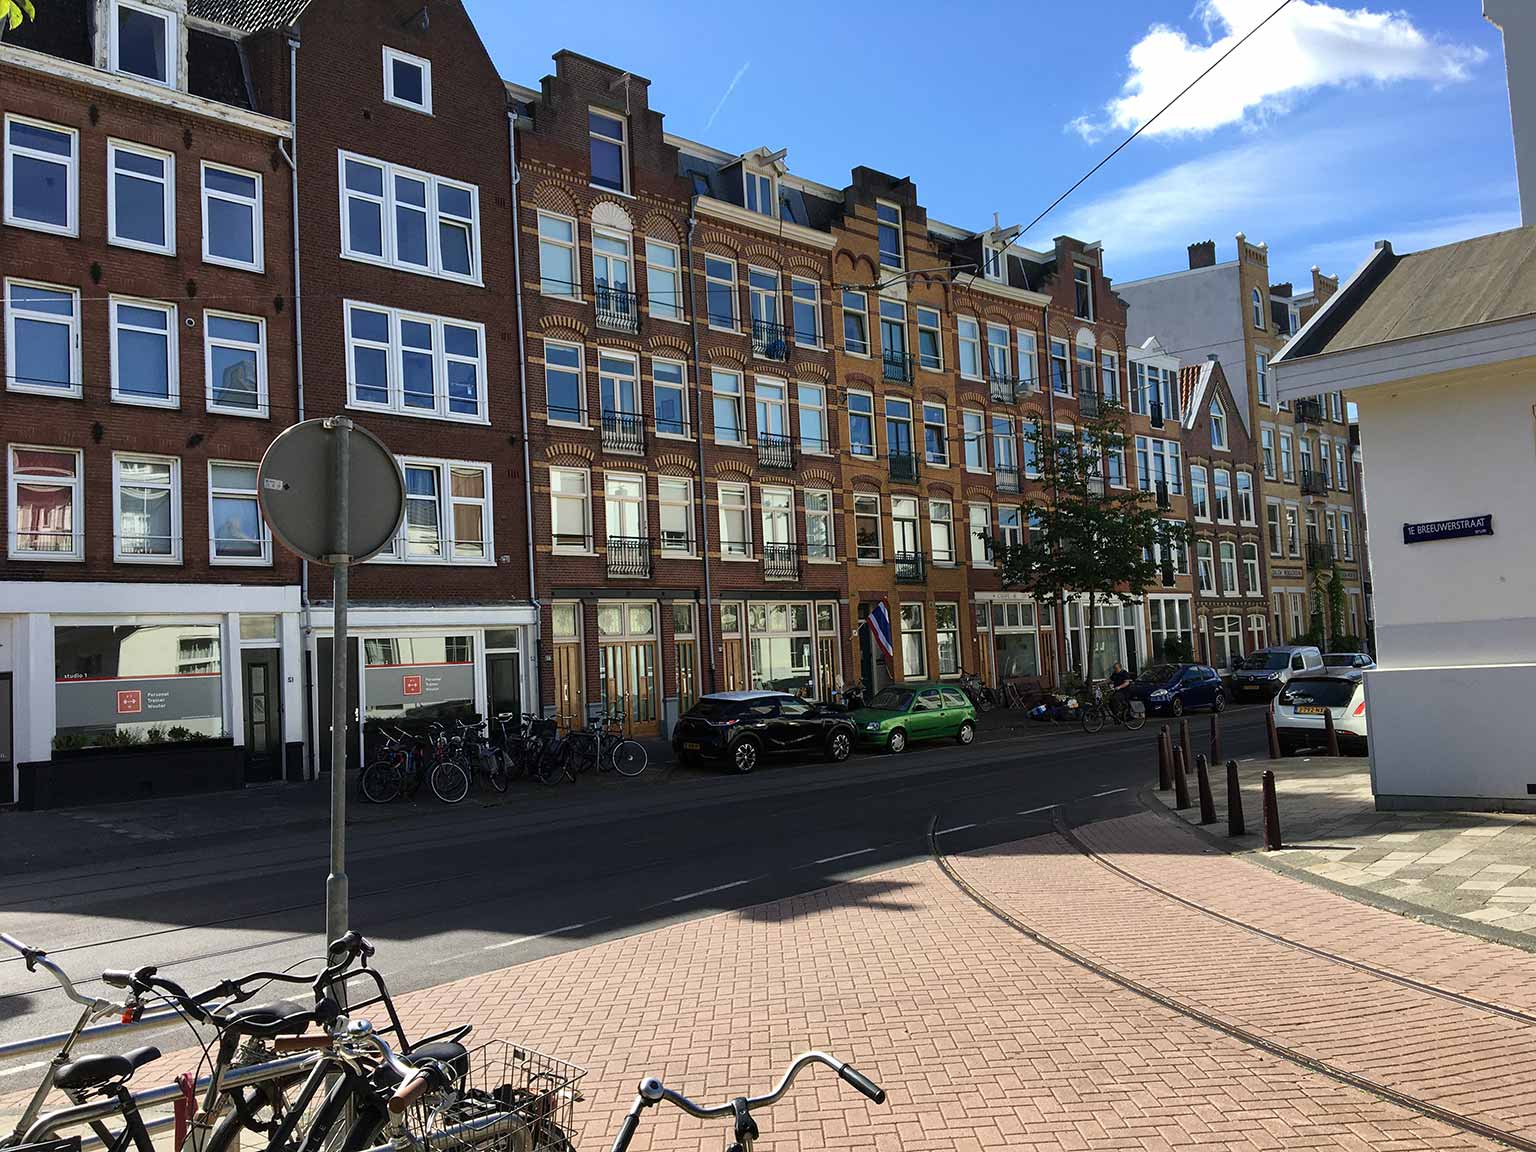 Planciusstraat, Amsterdam, seen from Eerste Breeuwersstraat